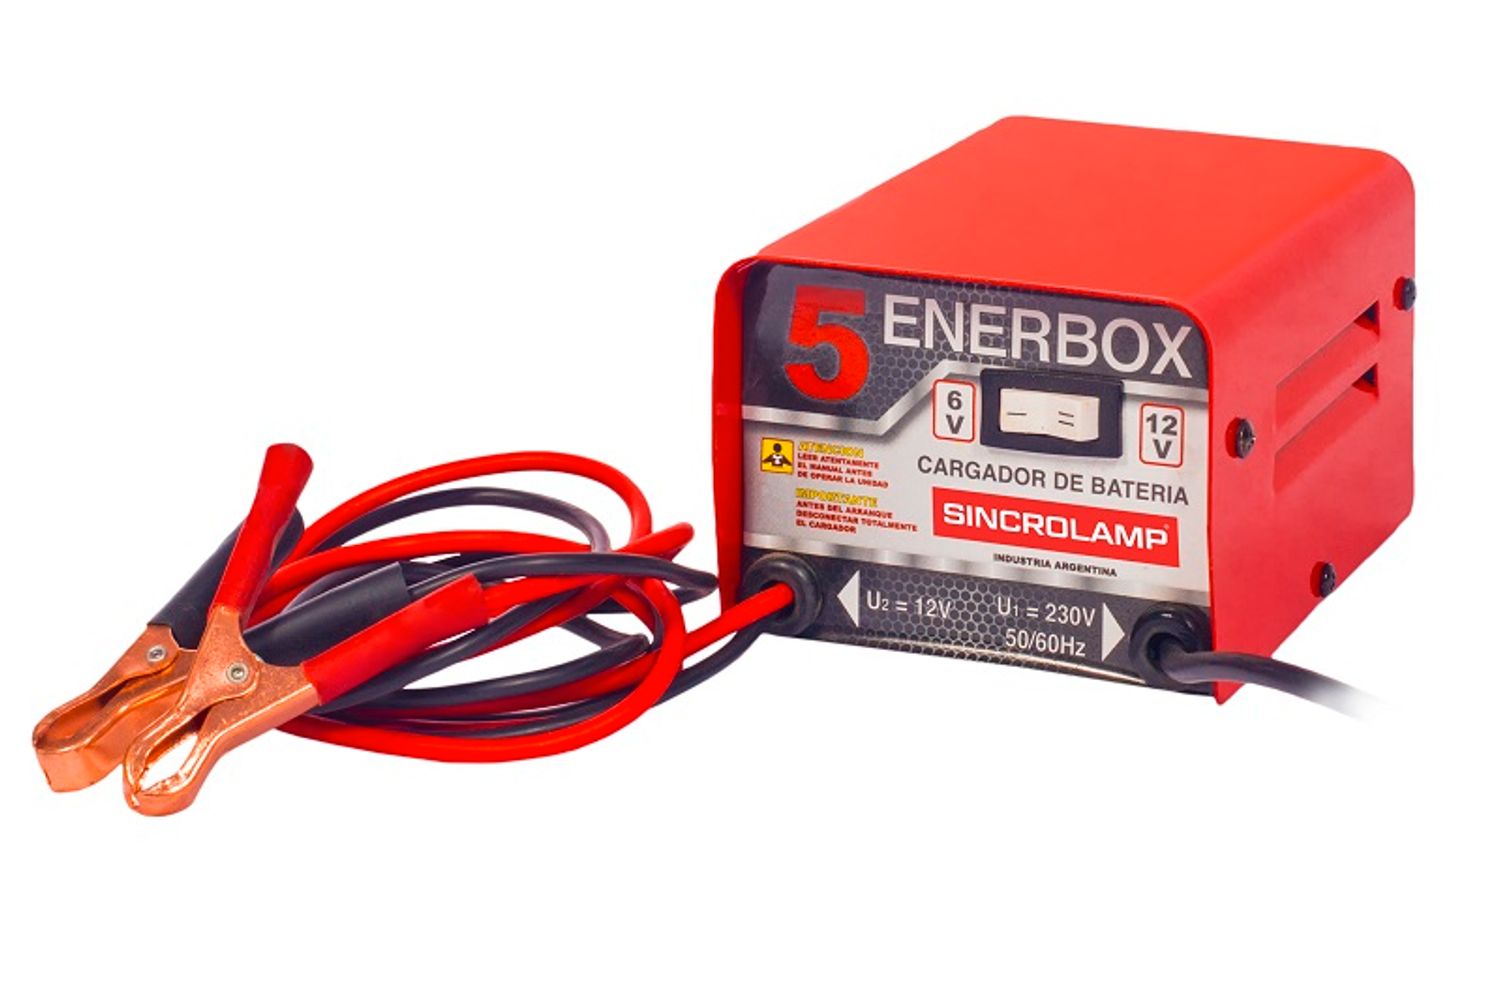 Detallado federación Persona especial Cargador de Baterias Sincrolamp Enerbox 5 3 amp 6/12v Rojo